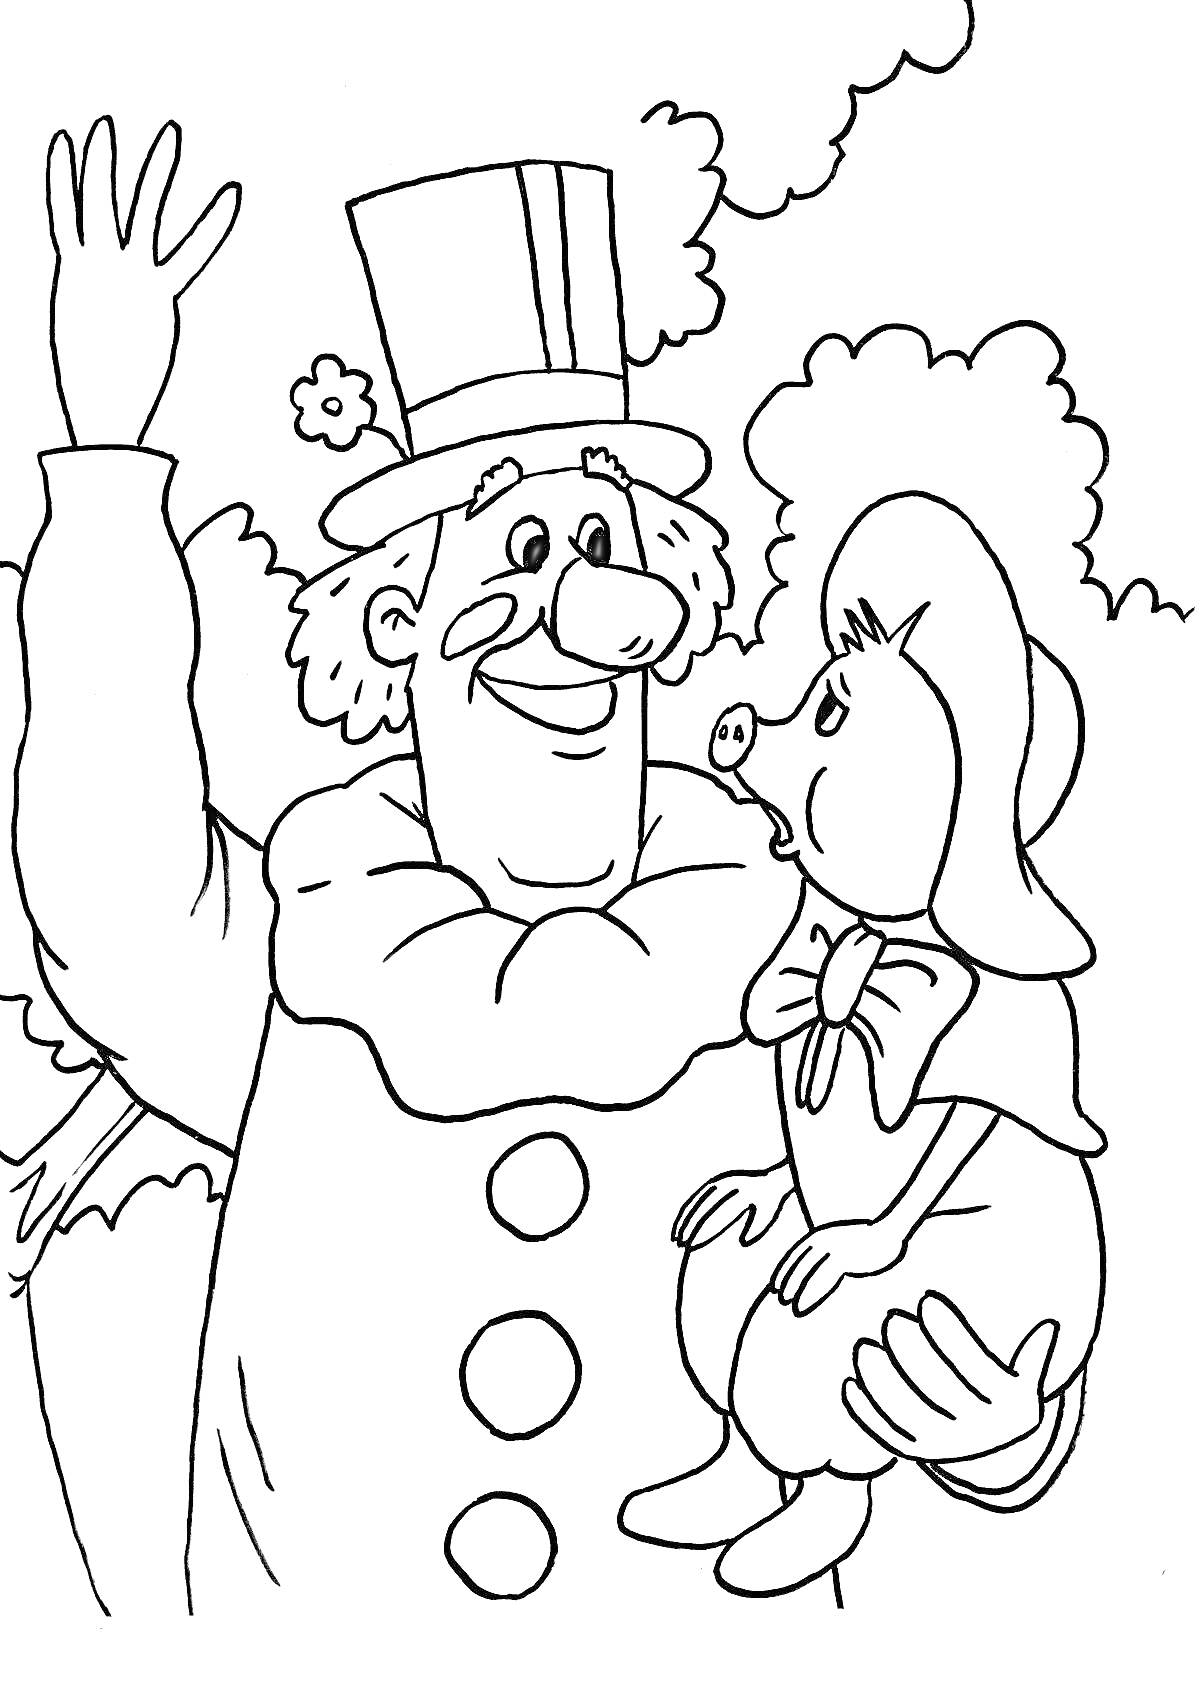 Клоун с большим носом в цилиндре держит на руках поросенка в бантике